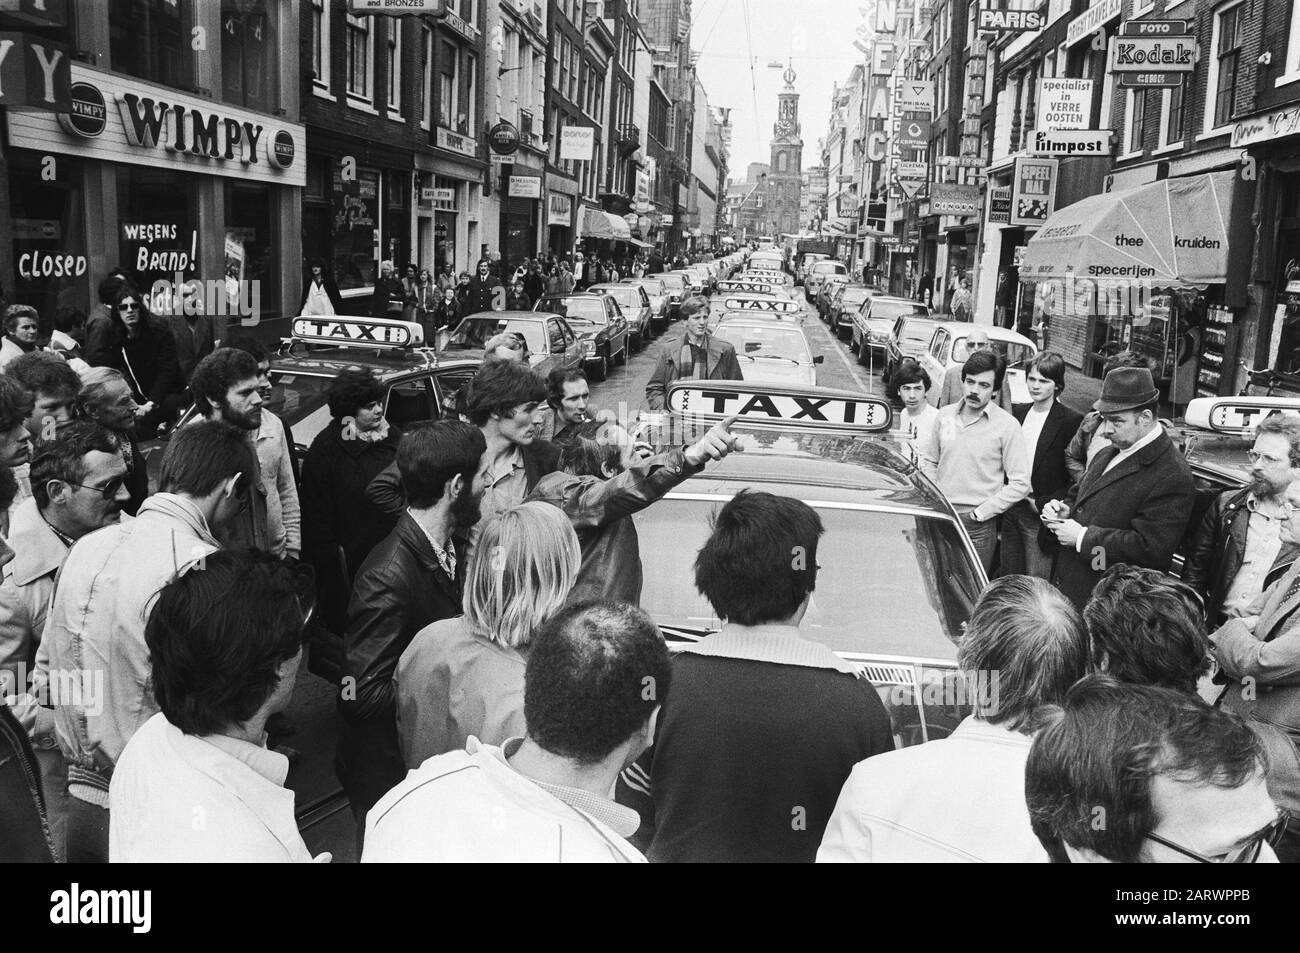 Les chauffeurs de taxi bloquent Reguliersbreestraat à Amsterdam en protestant contre les discours d'un collègue chauffeurs de taxi, manifestations Date : 12 avril 1979 lieu : Amsterdam, Noord-Holland mots clés : manifestations, chauffeurs de taxi Banque D'Images